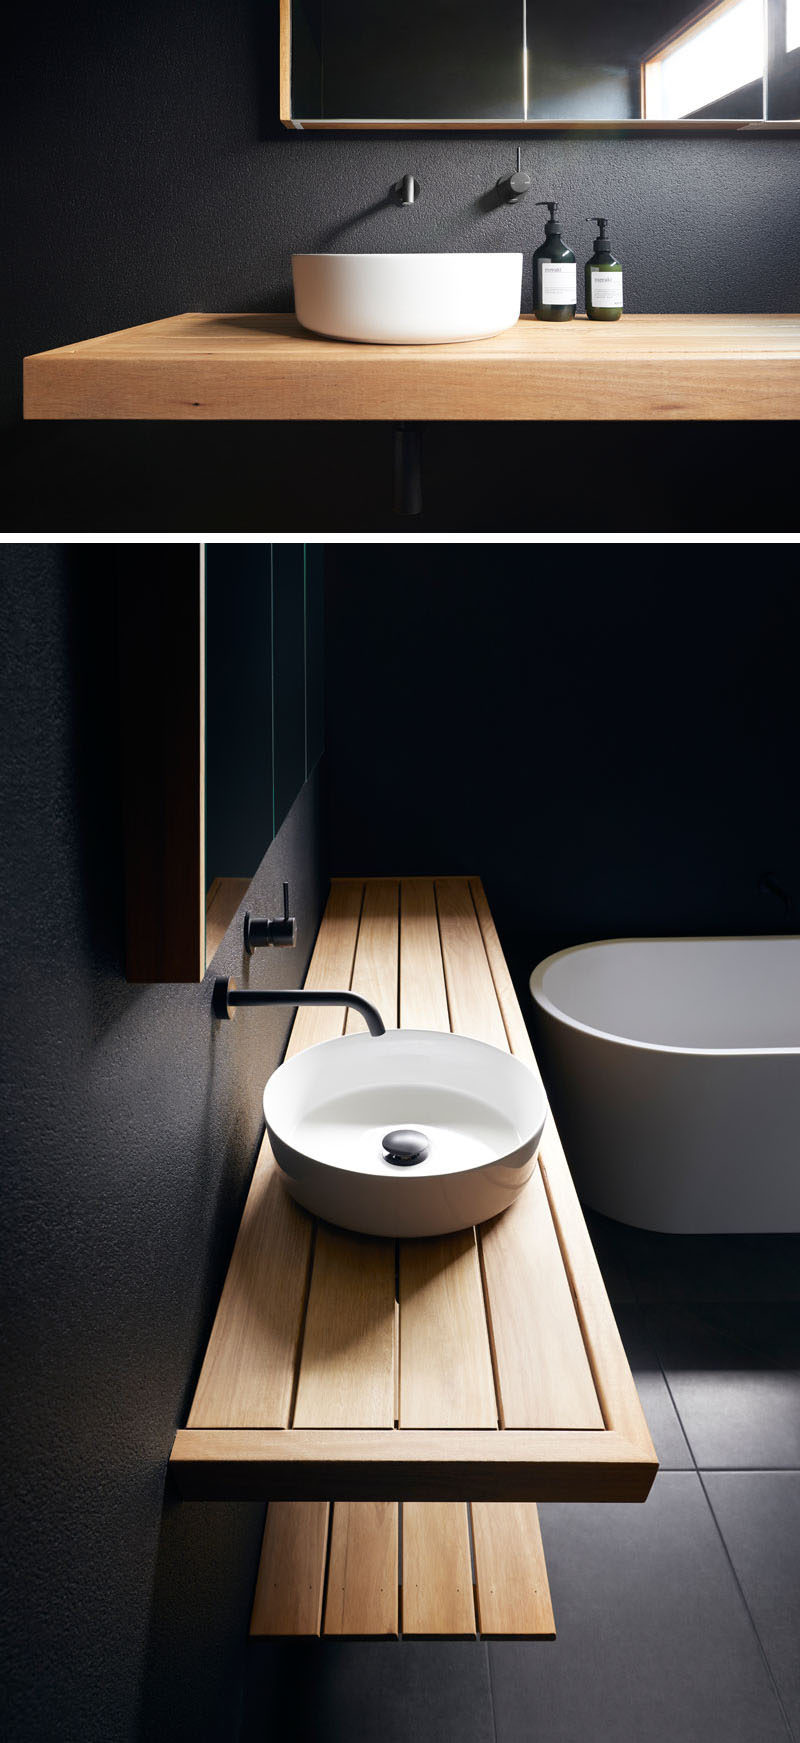 Современная ванная комната с матовыми черными стенами, деревянным туалетным столиком, белой раковиной и ванной. #BlackBathroom # ModernBathroom